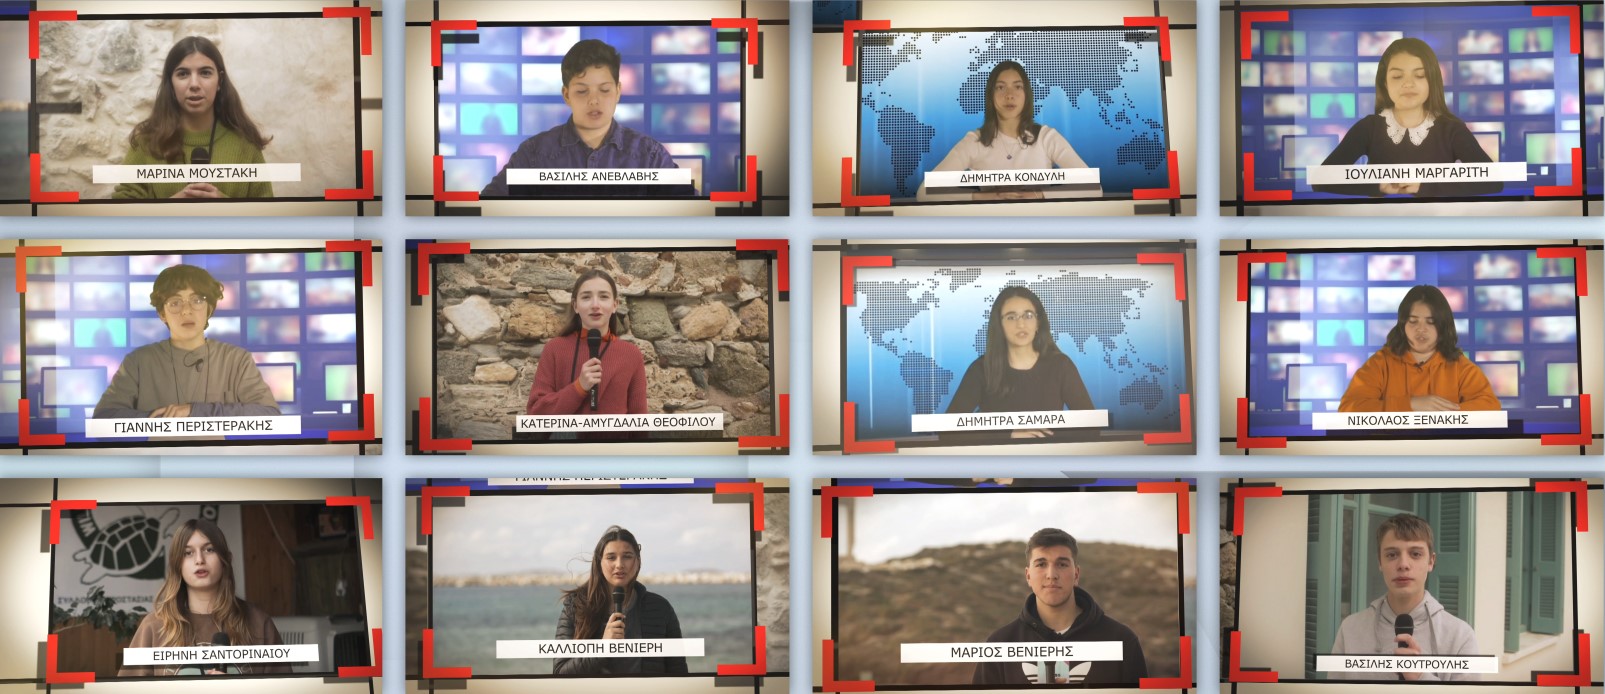 Μαθητές της Νάξου παρουσίασαν το πρώτο δελτίο ειδήσεων αποκλειστικά με καλές ειδήσεις (video)